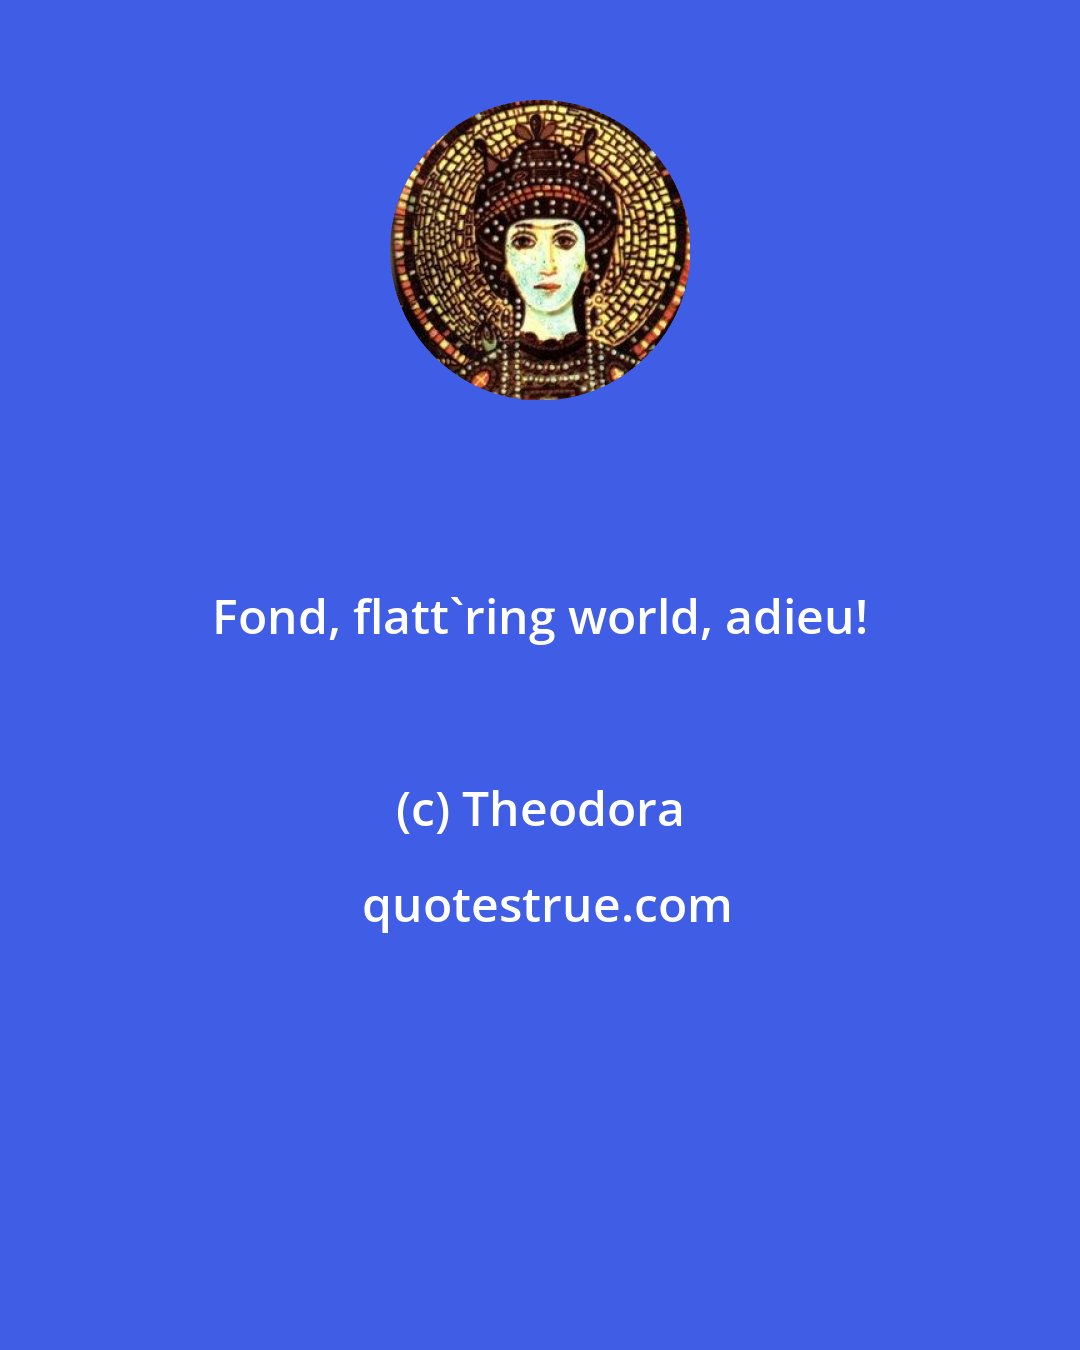 Theodora: Fond, flatt'ring world, adieu!